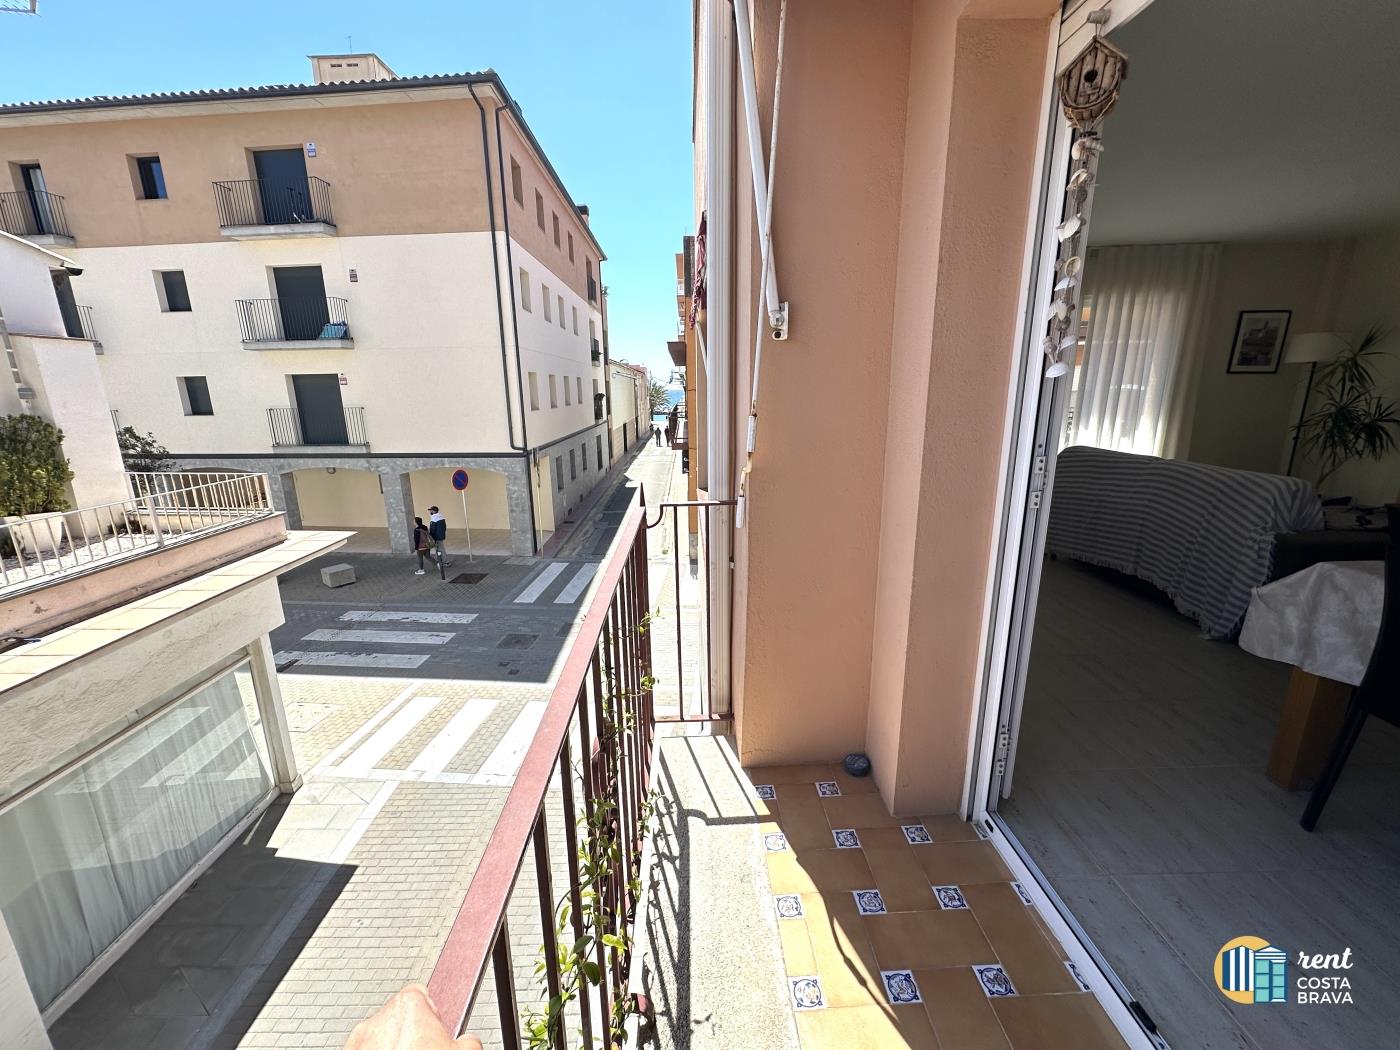 Sant Antoni appartement met een uitzonderlijke locatie .en Sant Antoni de Calonge